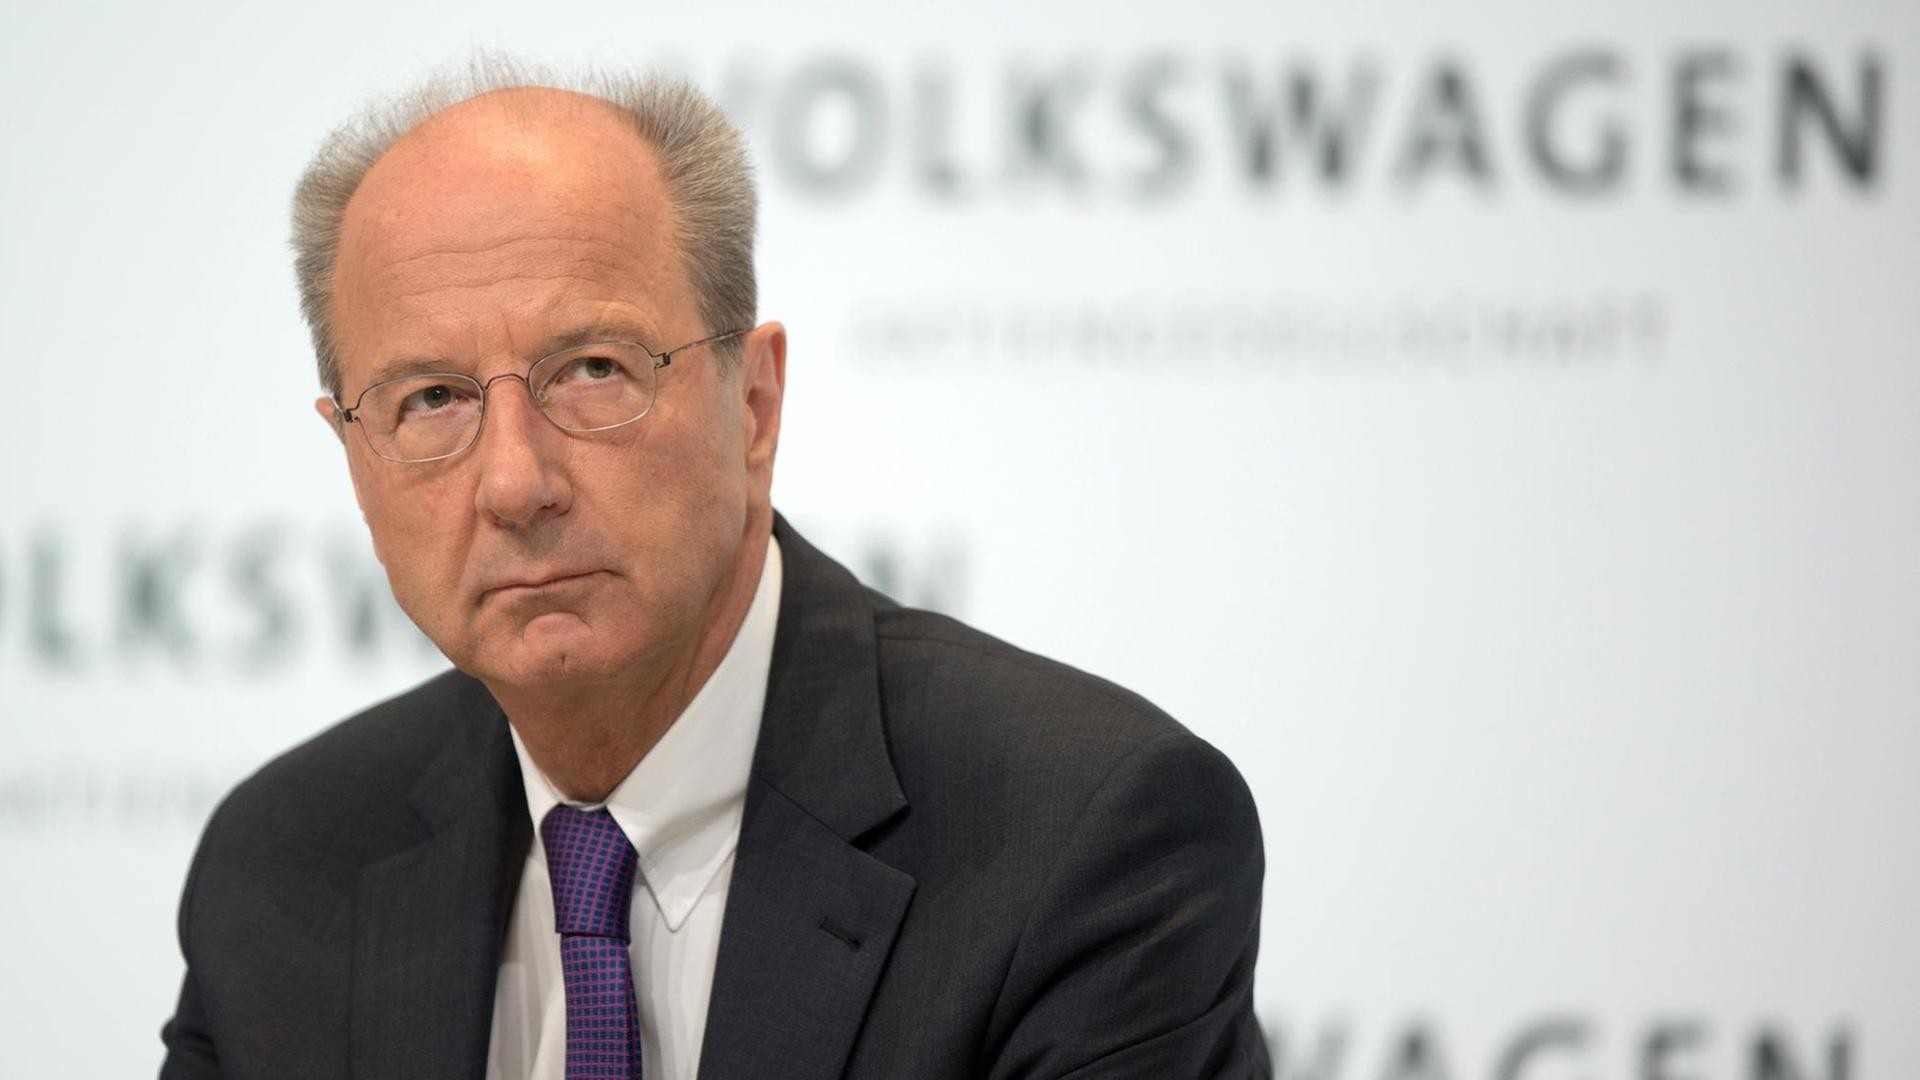 Hans Dieter Pötsch, Vorstandsmitglied der Volkswagen AG, Geschäftsbereich Finanzen und Cotrolling, soll neuer Aufsichtsratsvorsitzender von Volkswagen werden.